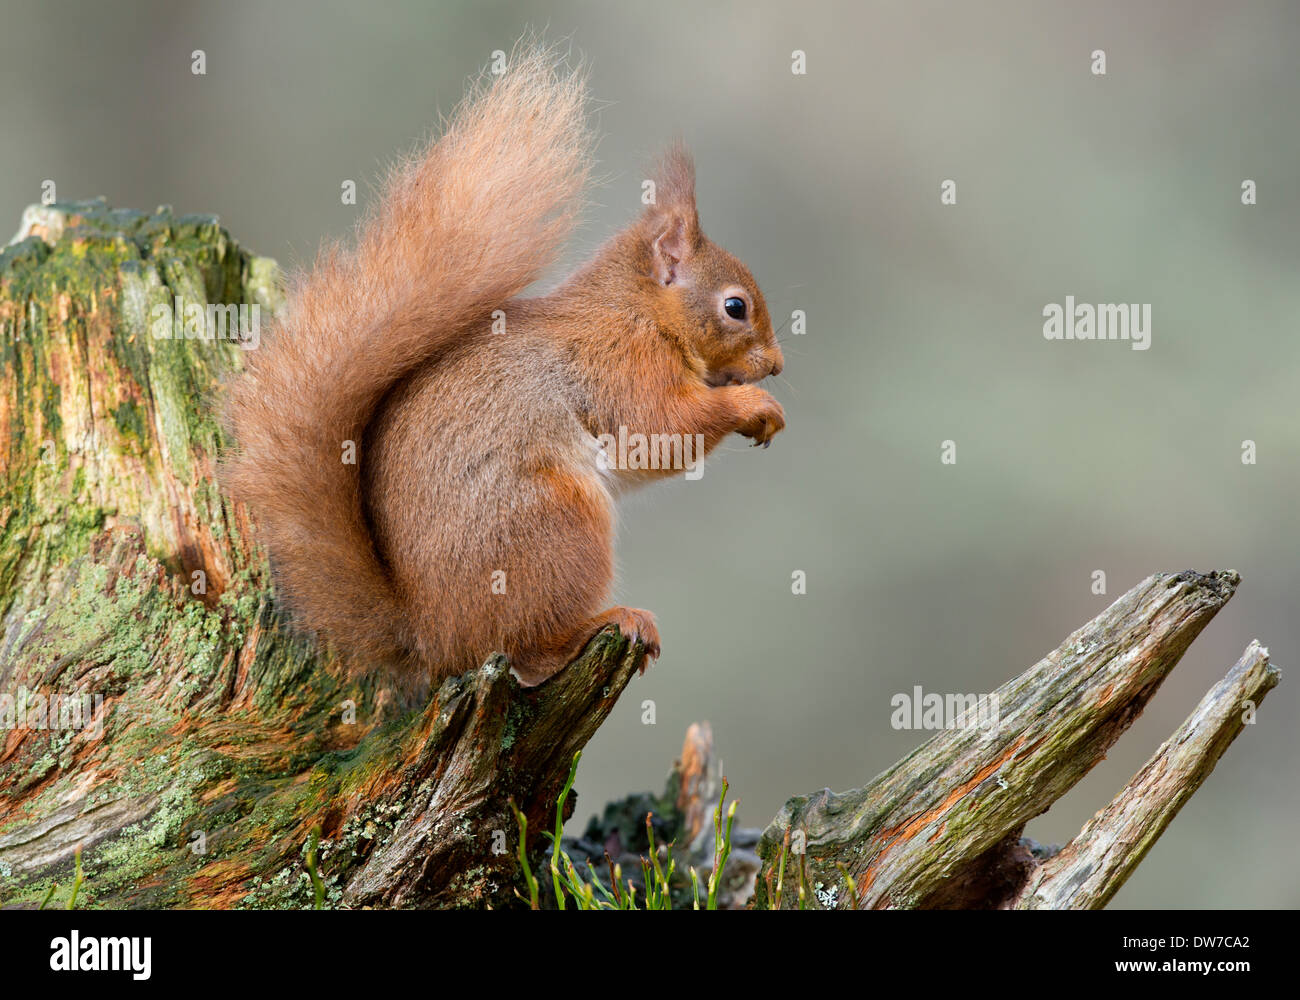 L'écureuil roux était assis sur une vieille souche d'arbre à droite Banque D'Images